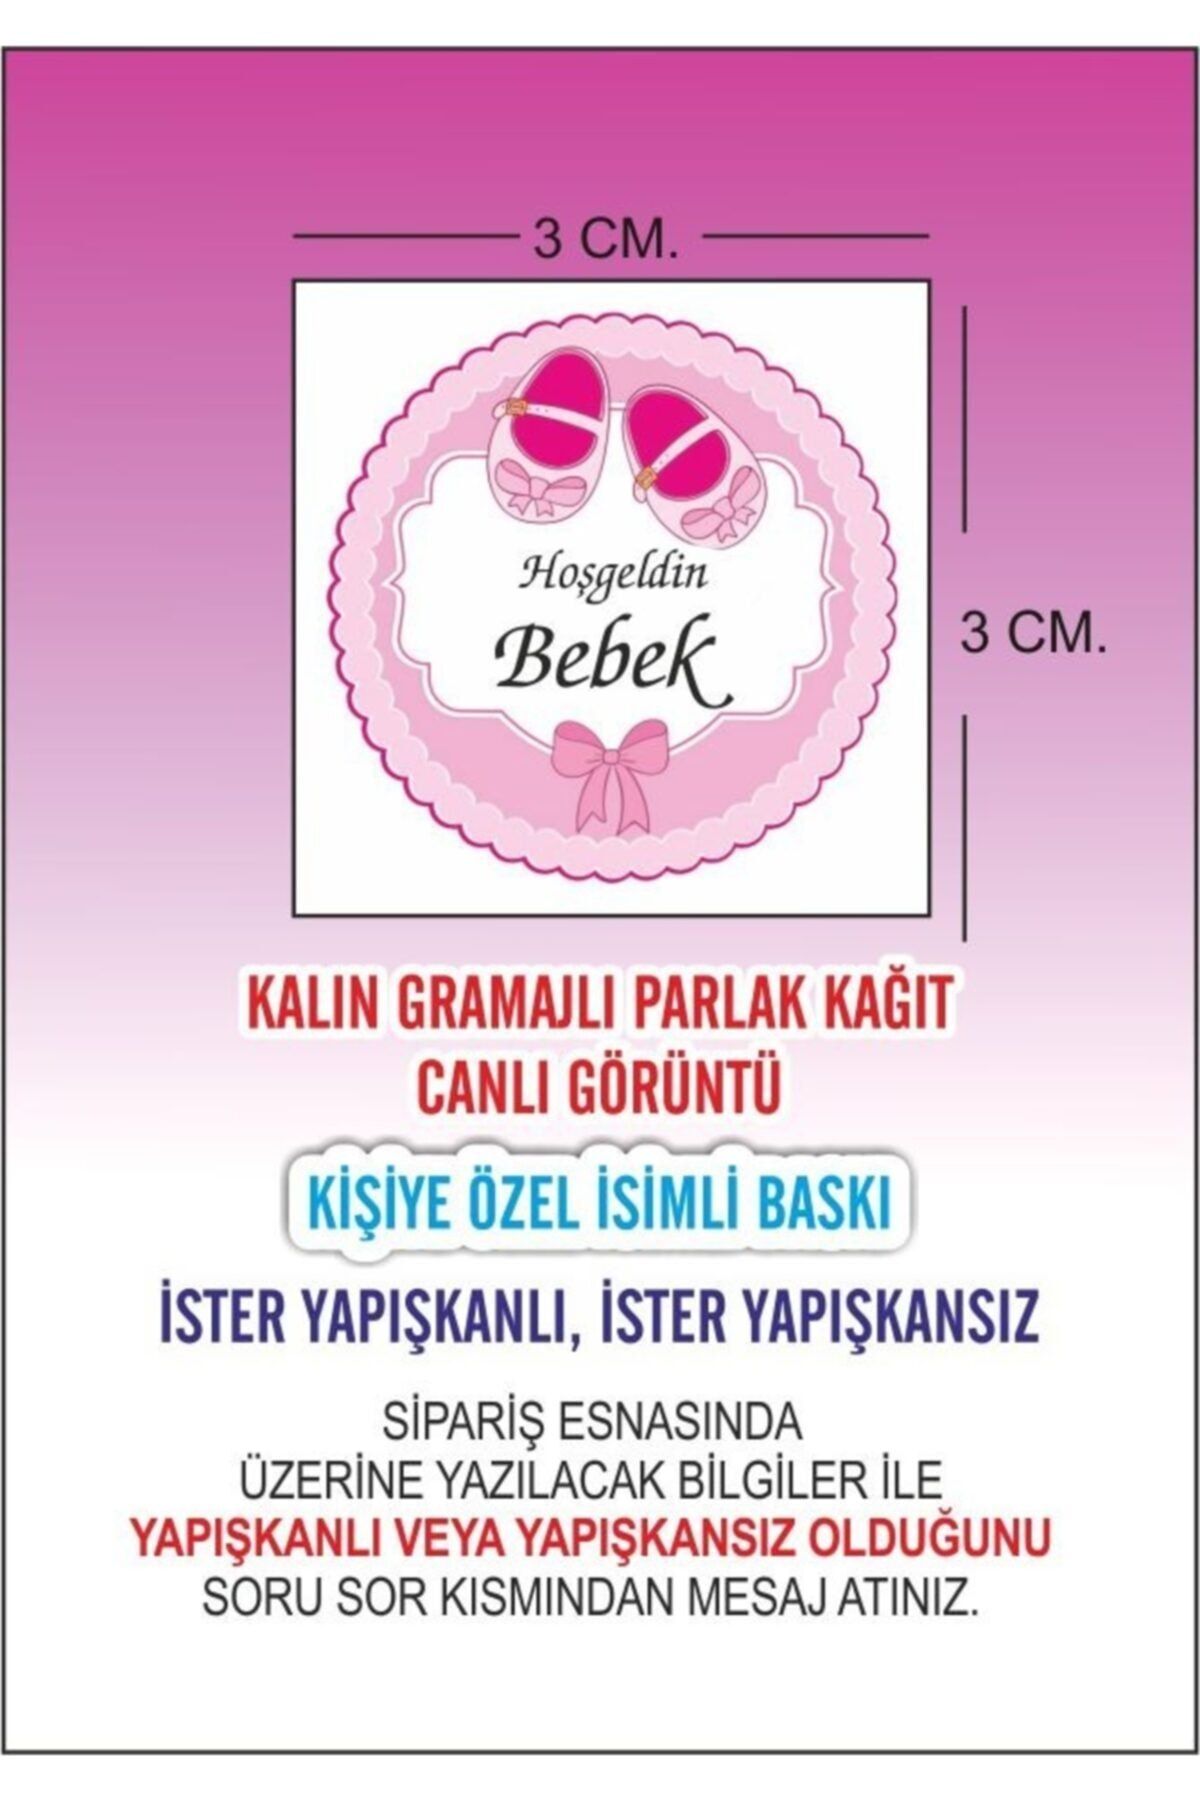 Liva Bebek Doğum, Sünnet, Nişan, Kına, Düğün Magnet Ve Şişe Etiketleri, Sticker Bb21